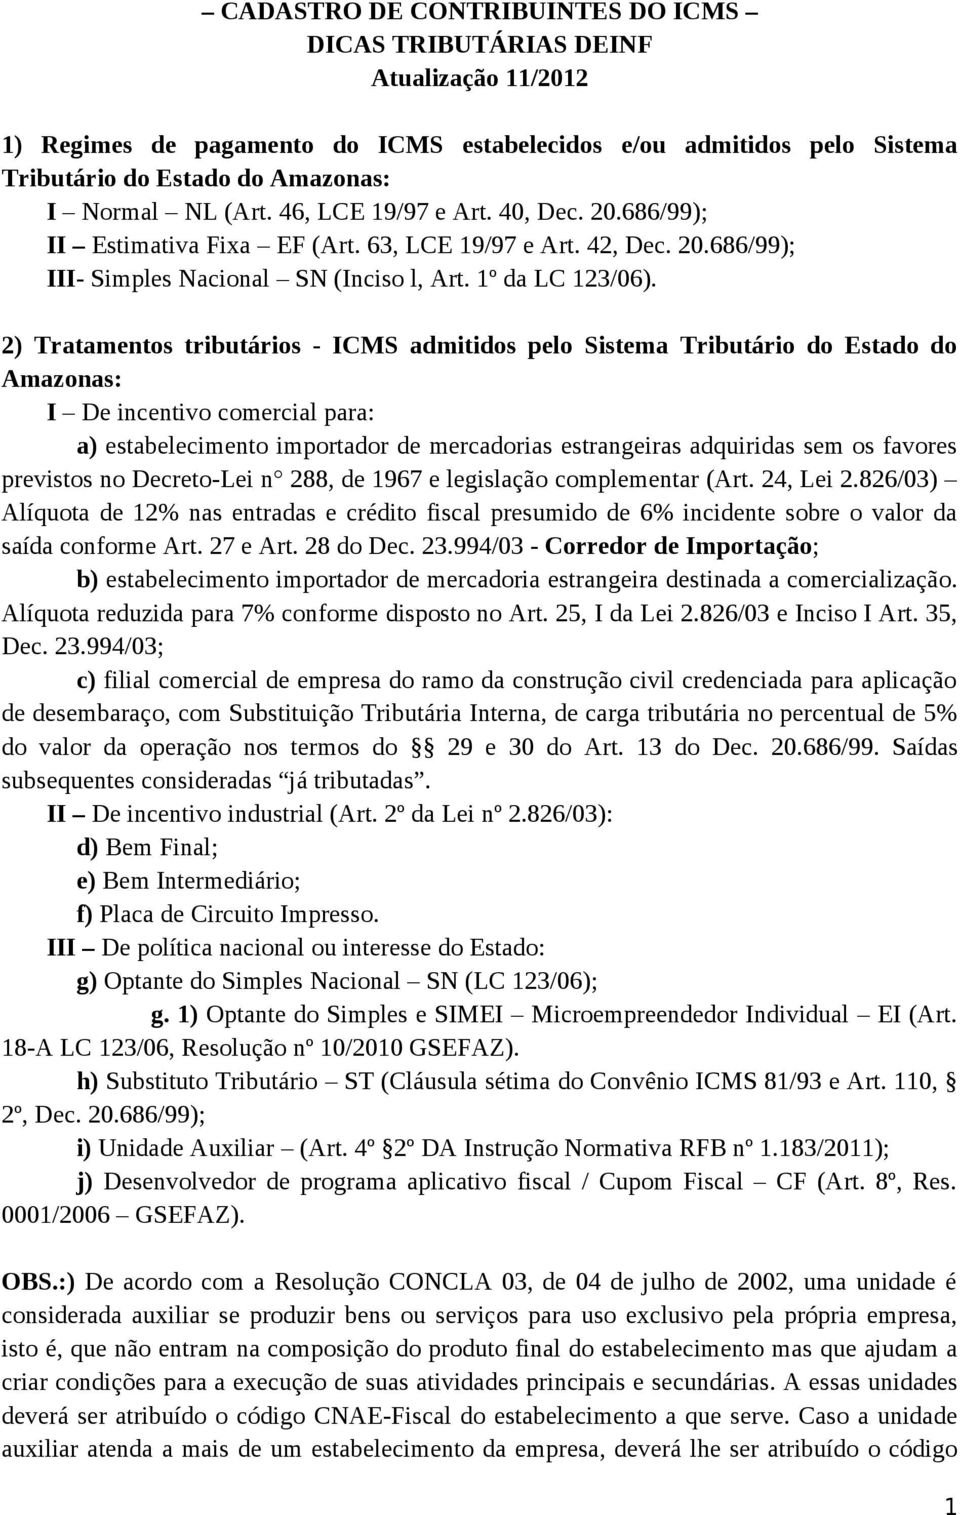 2) Tratamentos tributários - ICMS admitidos pelo Sistema Tributário do Estado do Amazonas: I De incentivo comercial para: a) estabelecimento importador de mercadorias estrangeiras adquiridas sem os